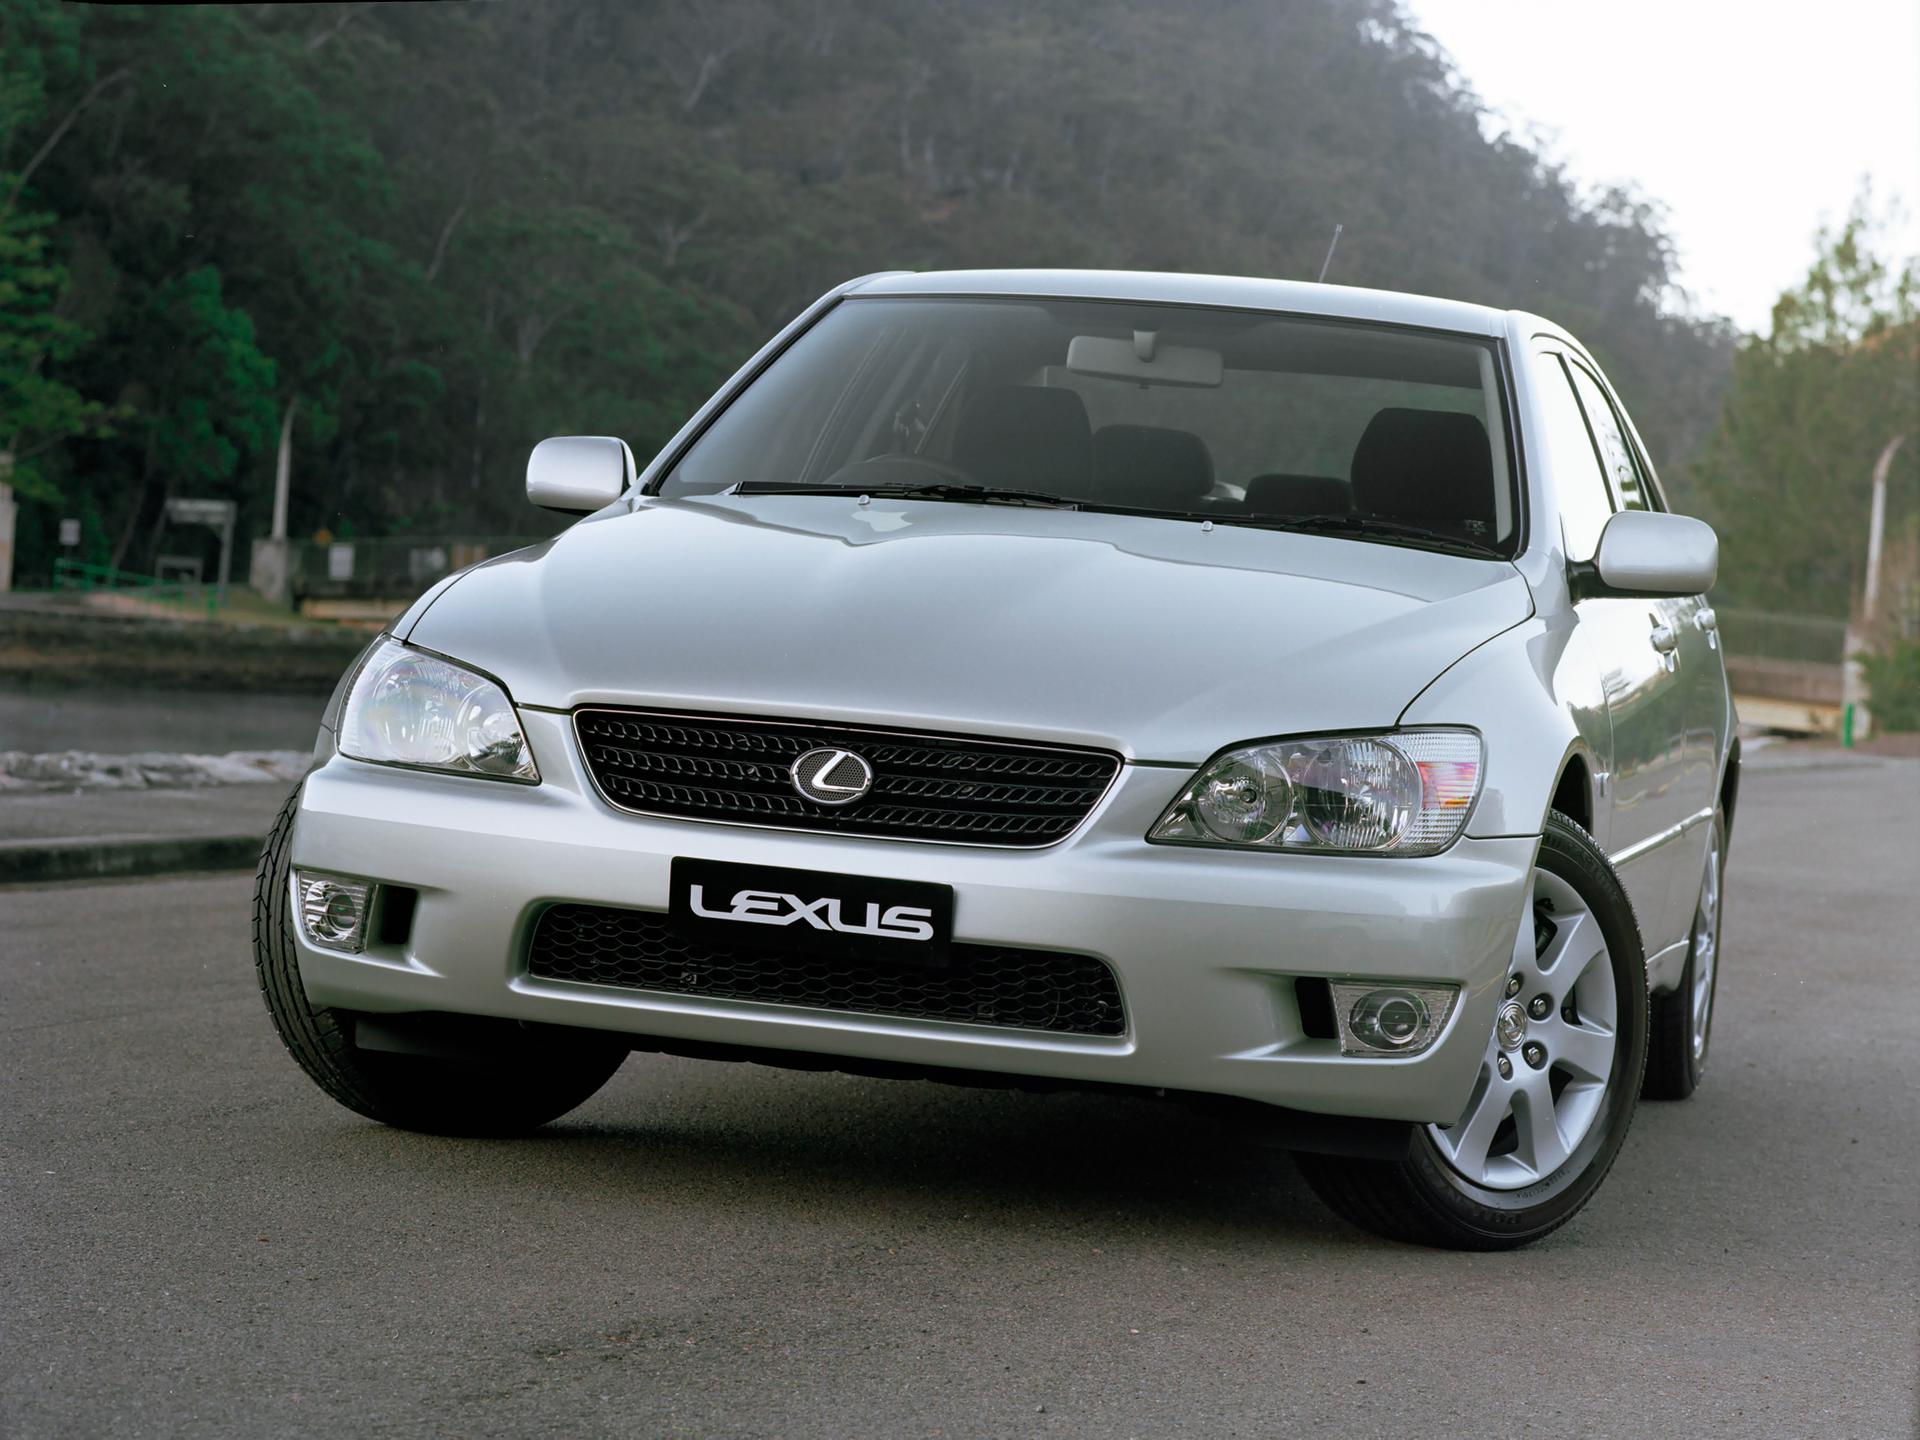 TEST Lexus IS 200 2.0 24V urodzony drapieżca Super